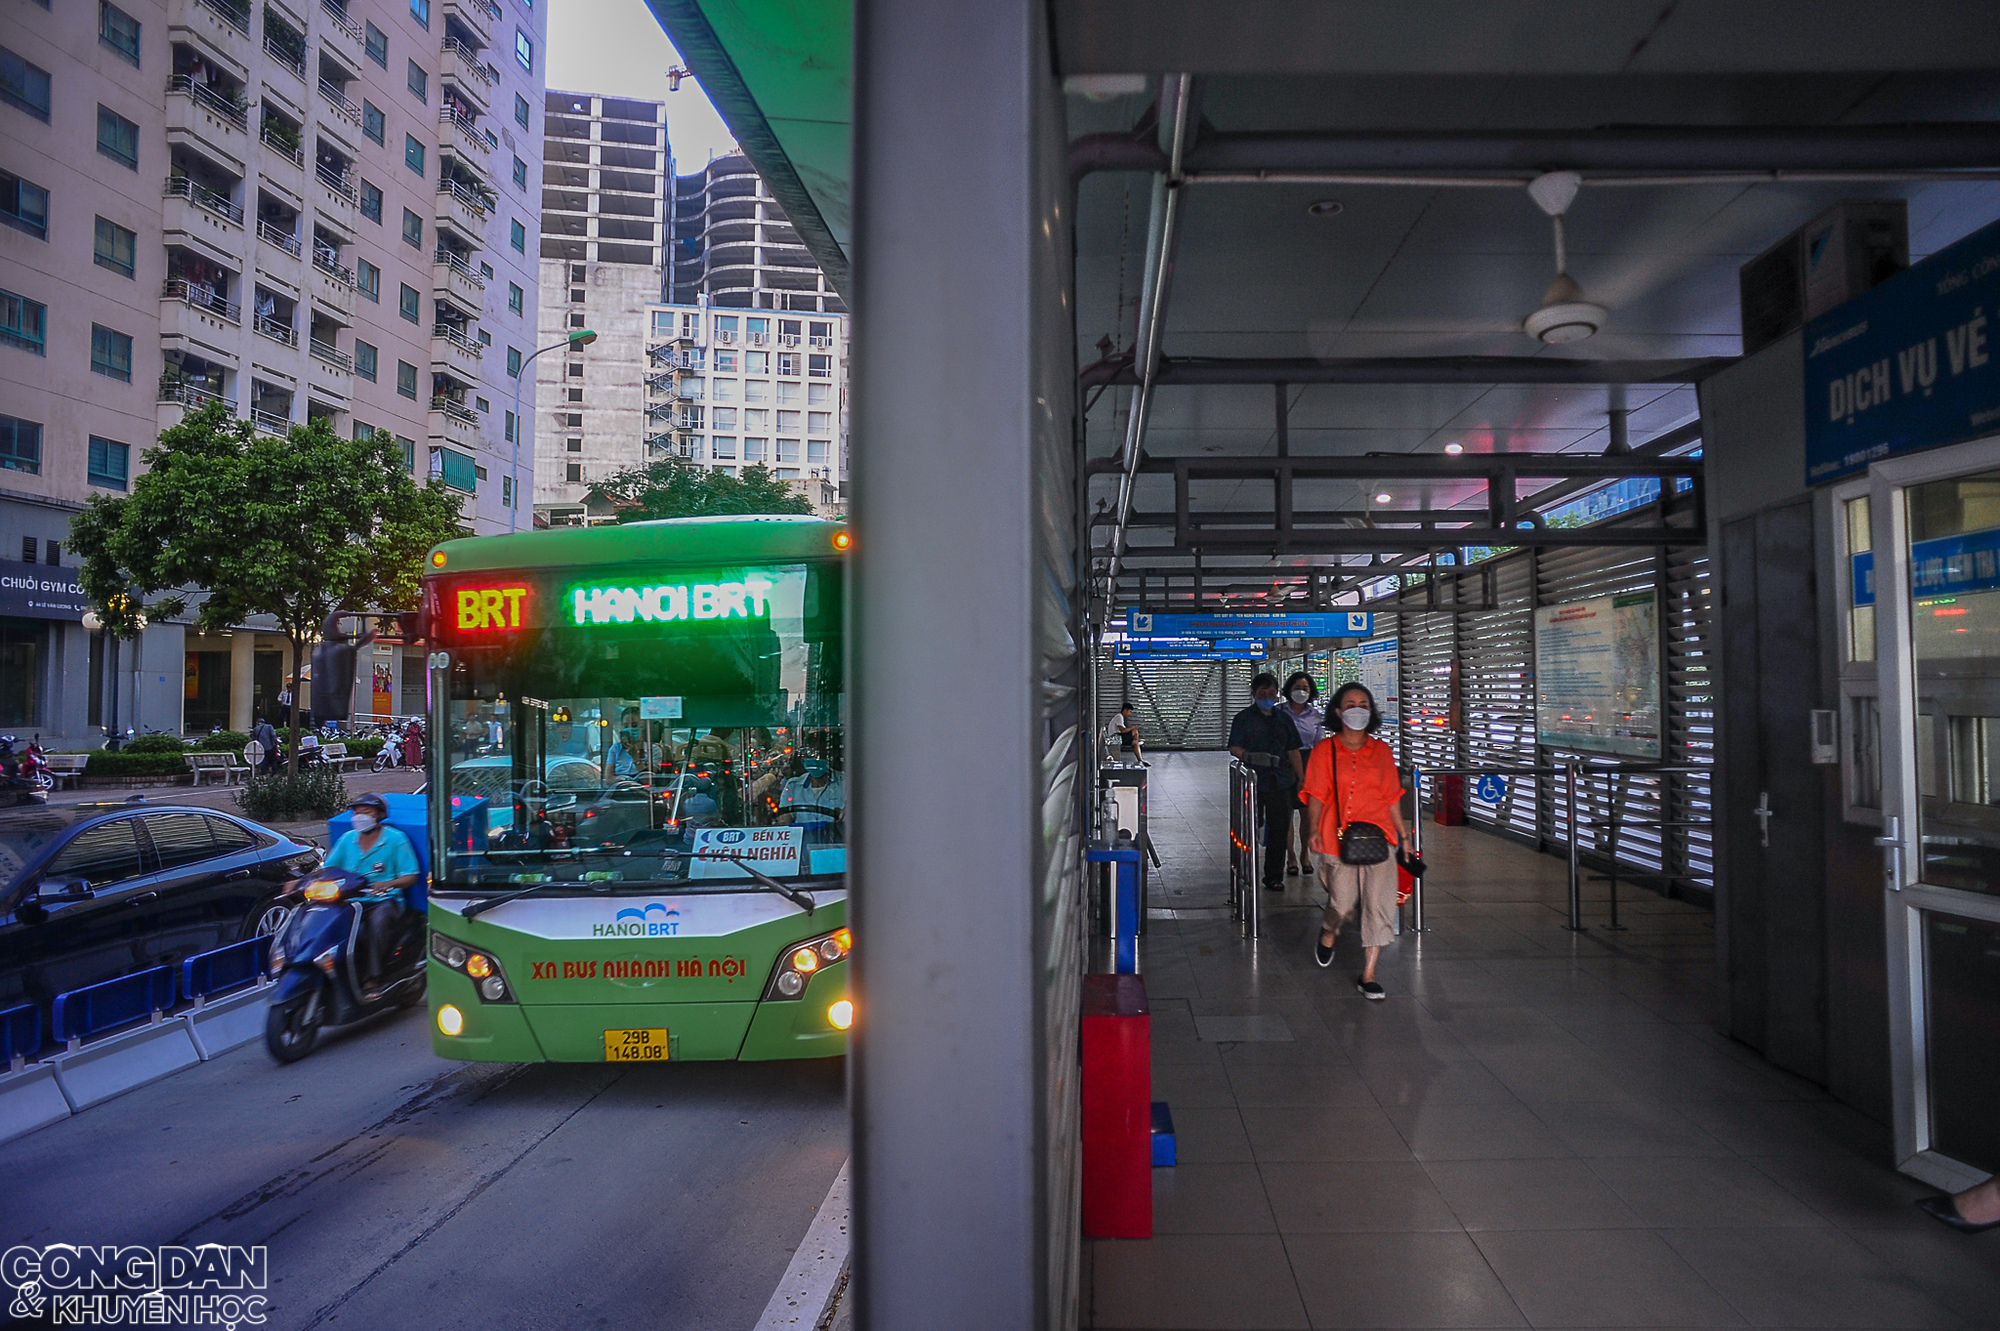 Hà Nội: Tuyến buýt nhanh BRT bị nhiều phương tiện lấn làn, nhà chờ đìu hiu - Ảnh 1.